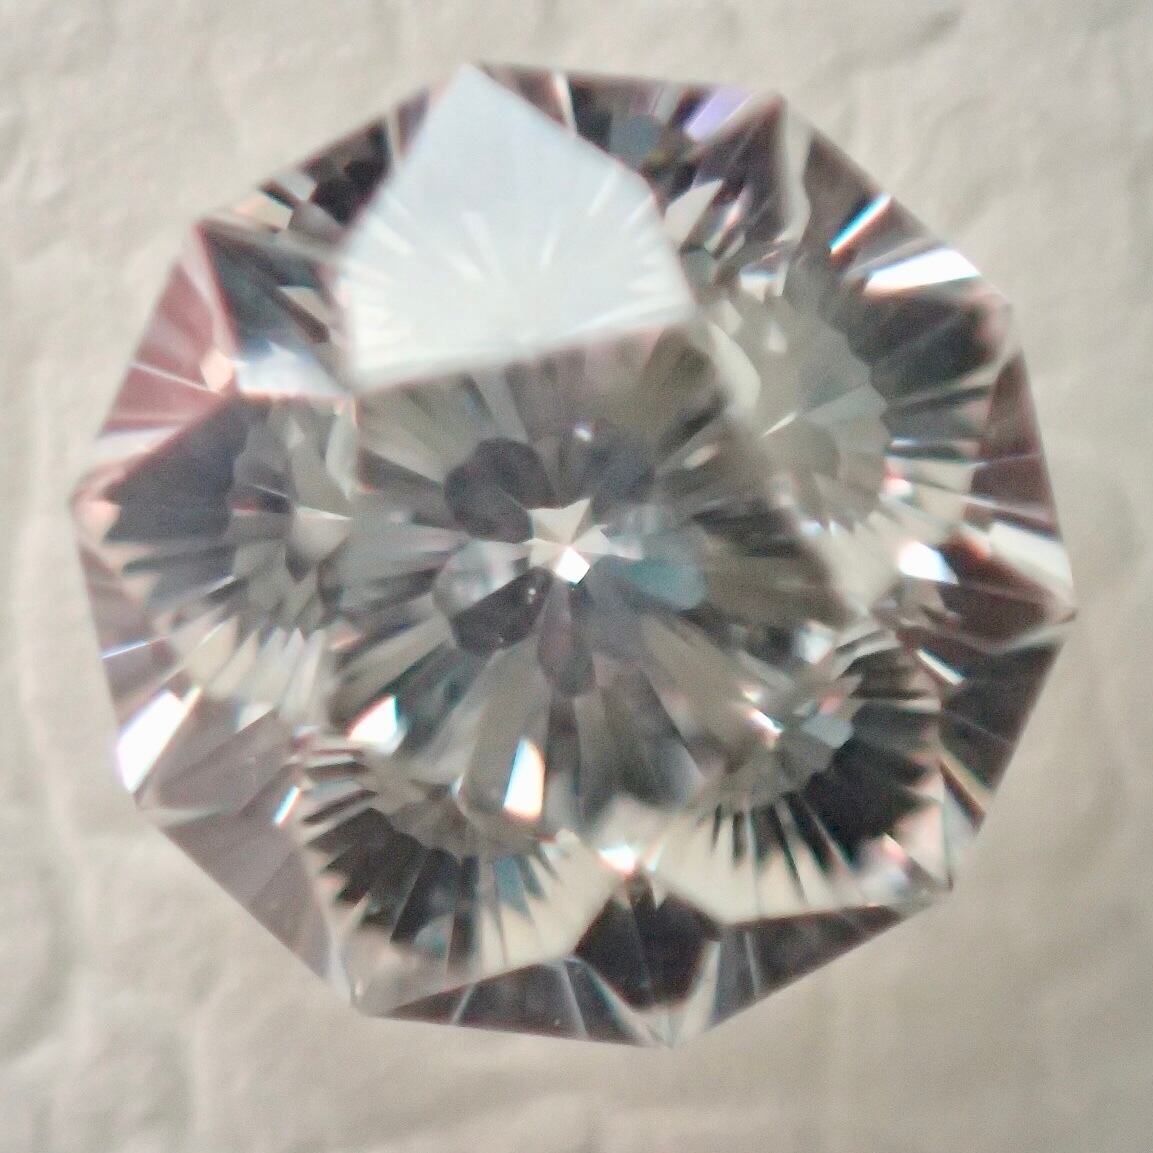 ダイヤモンドルース さくらカット 0.204ct E VS1 中宝ソーティング ダイヤモンド ルース 桜 さくらダイヤモンド